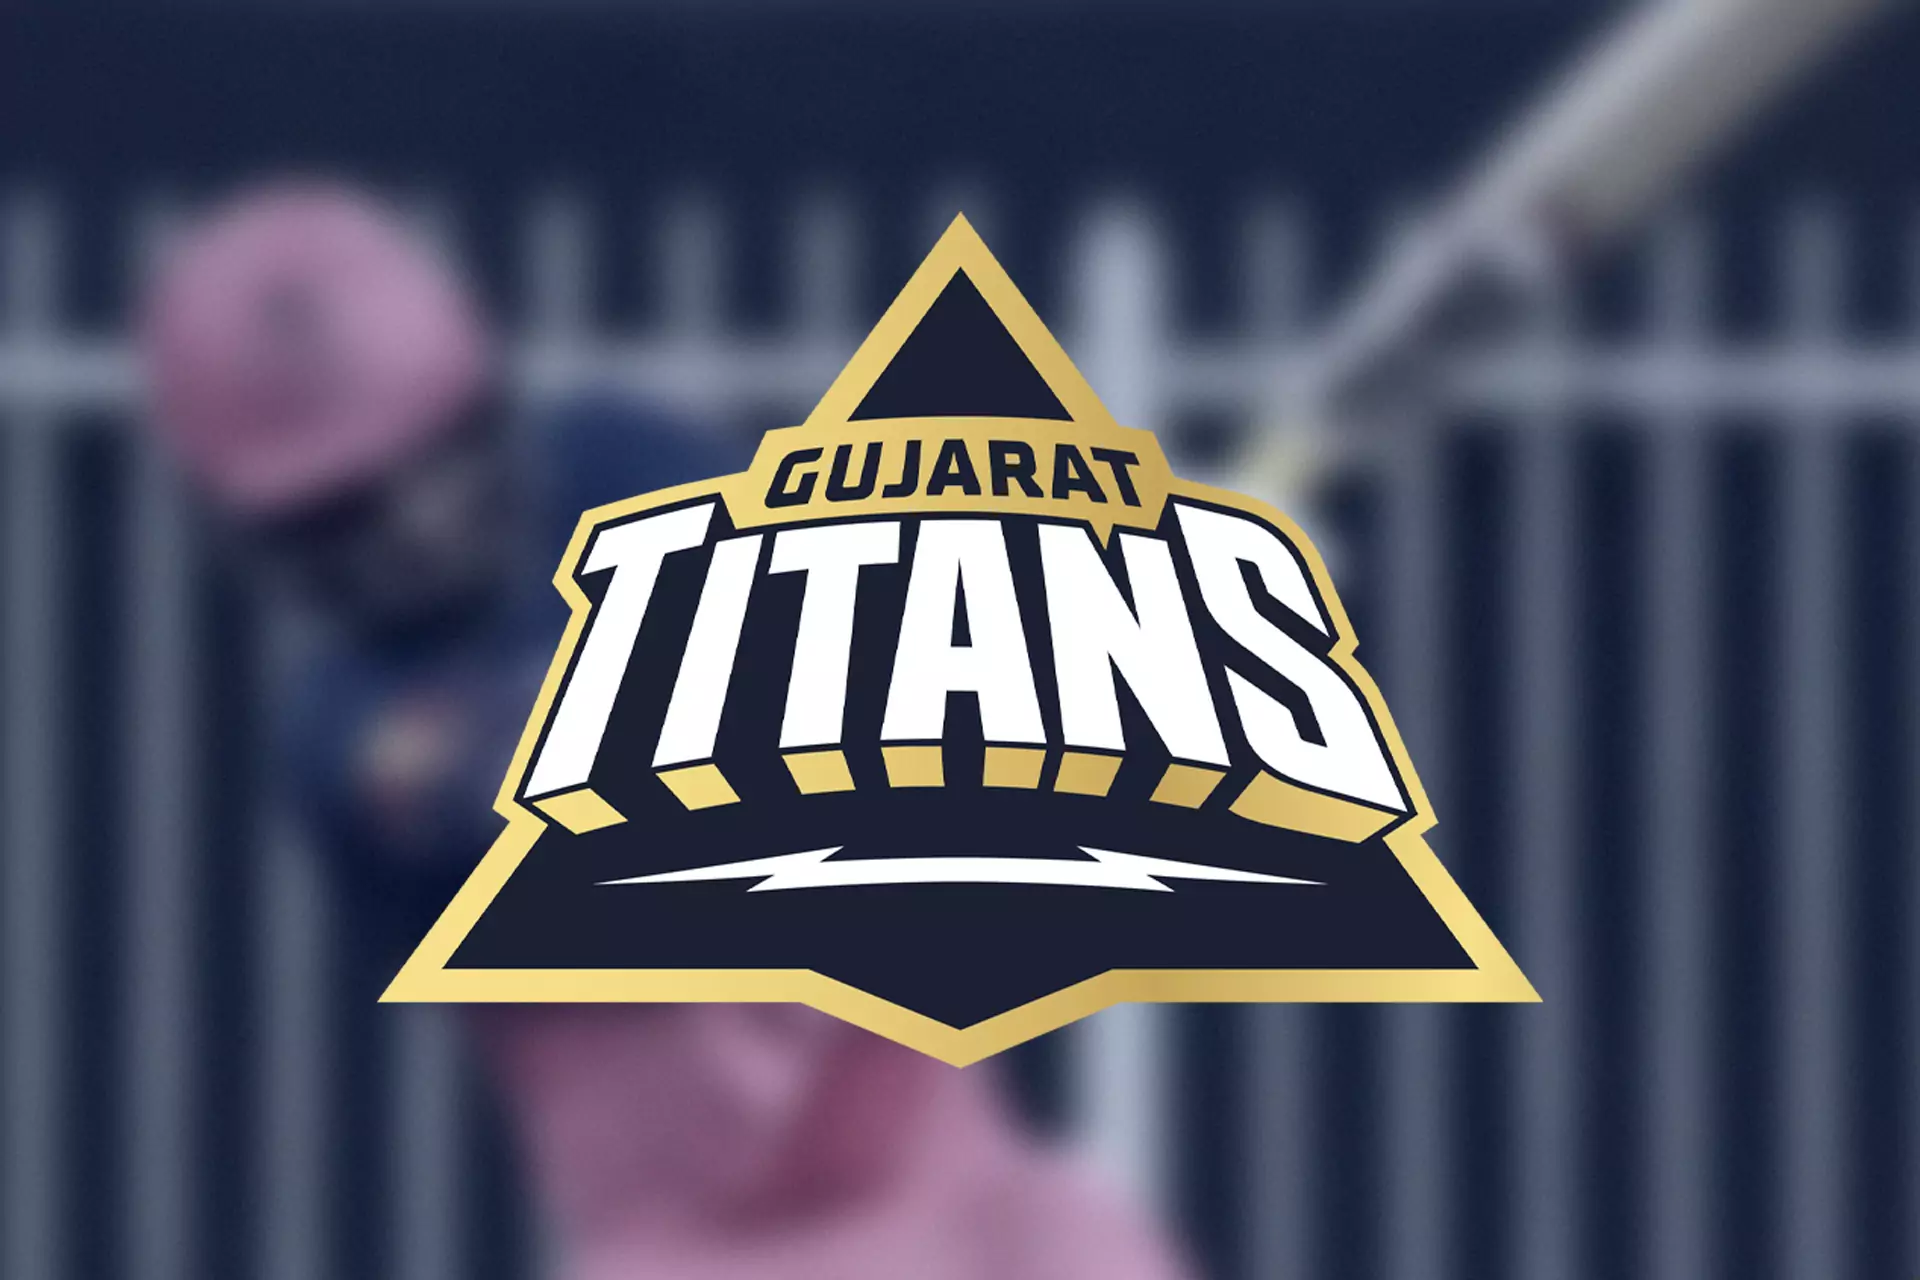 Gujarat Titans is a new team in IPL 2022.